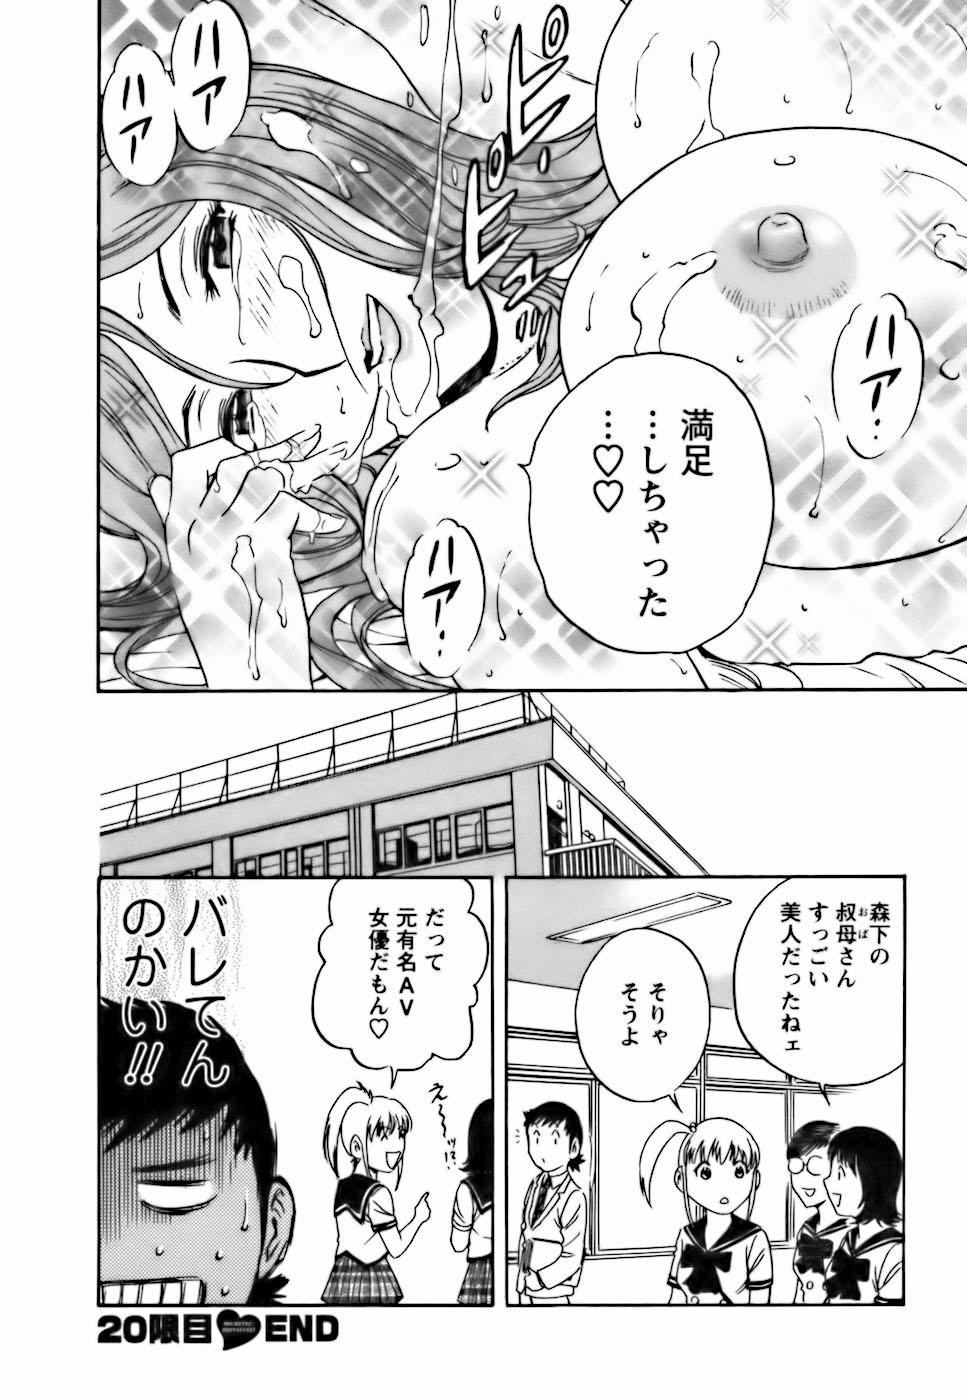 [Hidemaru] Mo-Retsu! Boin Sensei (Boing Boing Teacher) Vol.3 47